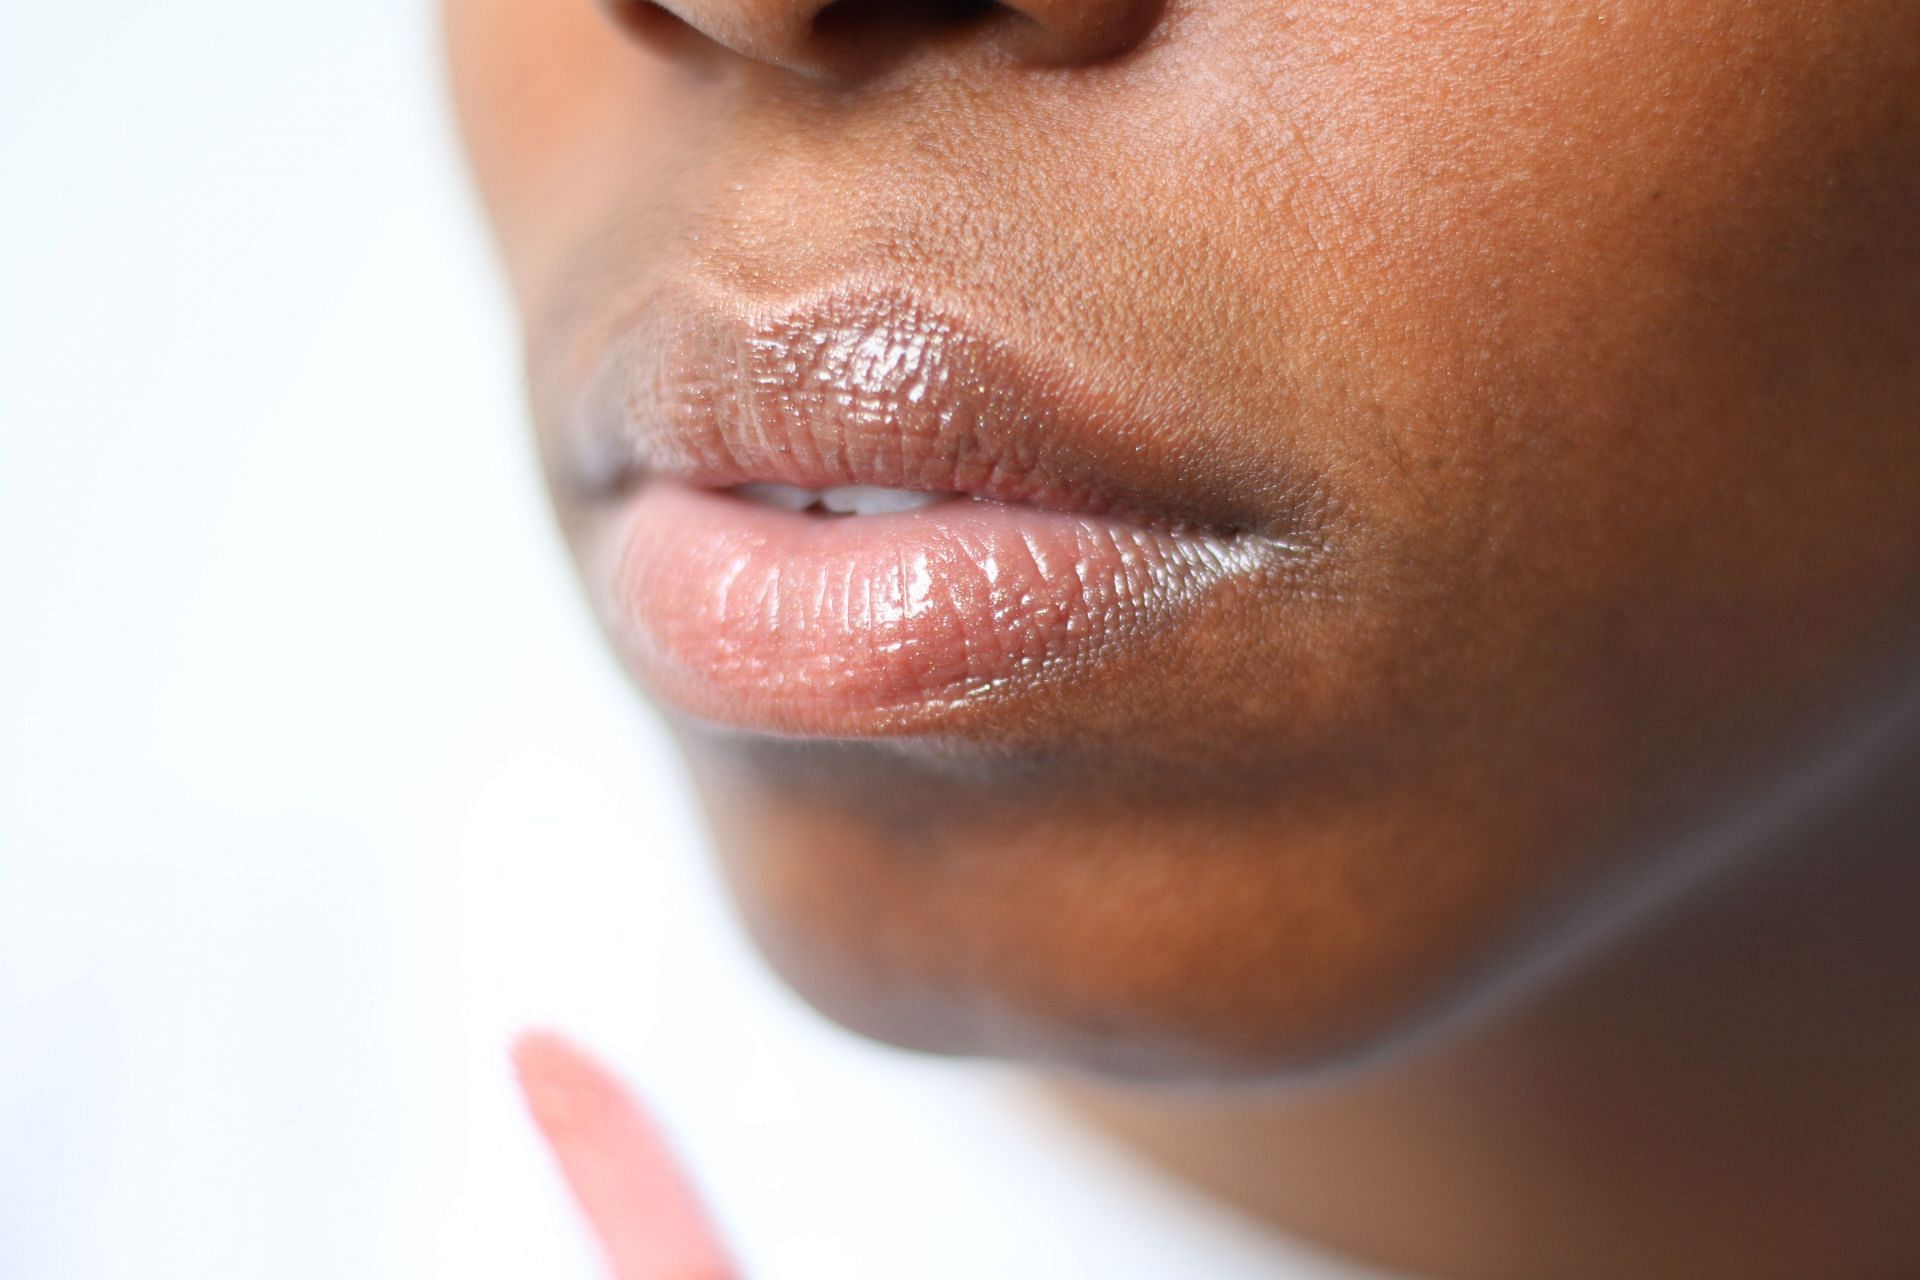 Lips (Image via Unsplash/Melissa)